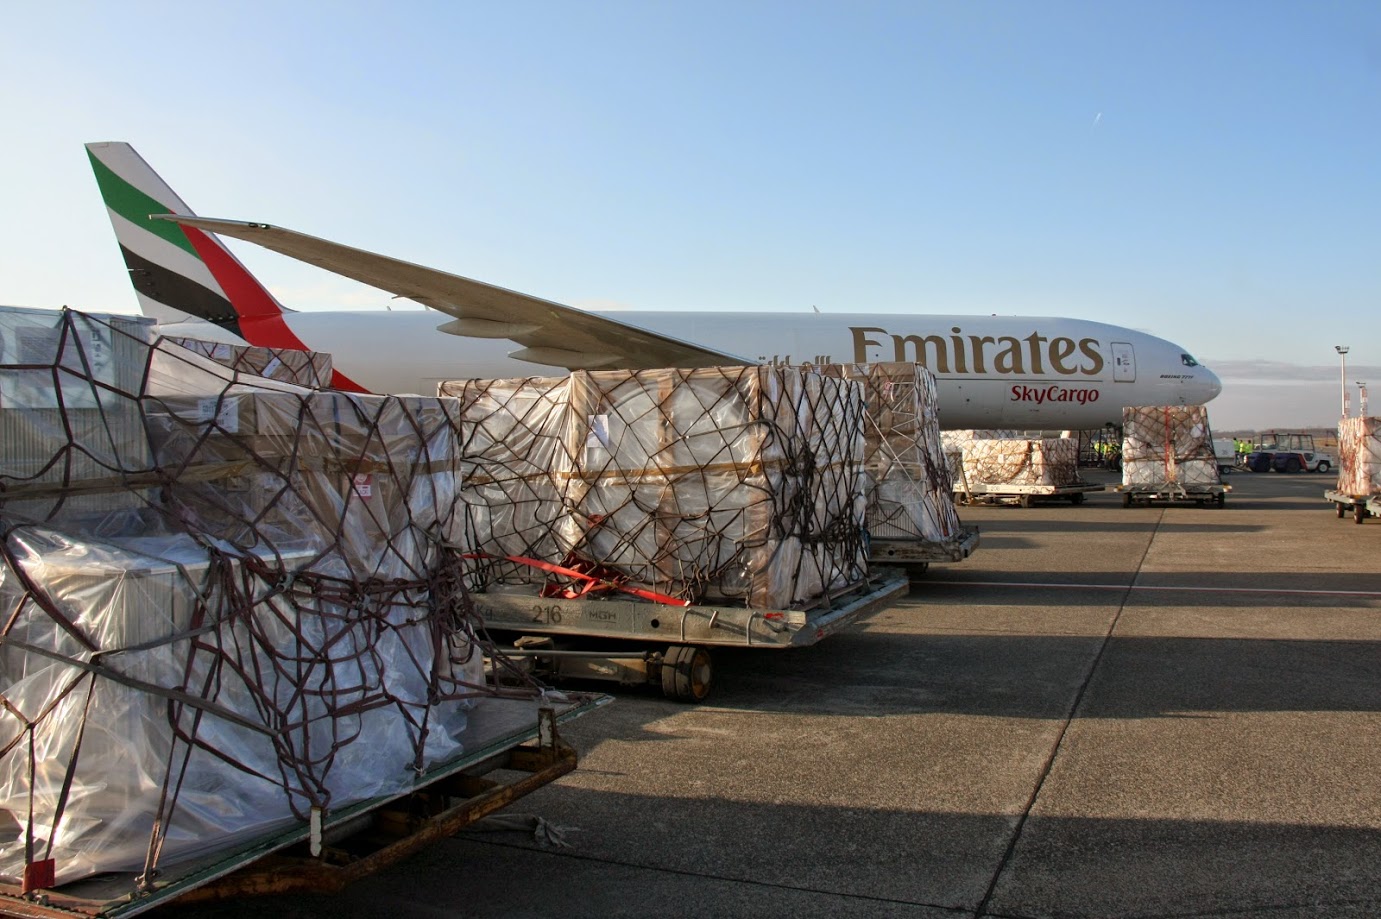 Emirates teherszállító: az, hogy a társaság a napi utasjáratot is 777-es teljesíti, egyben nagyobb padló alatti cargo-kapacitást jelent